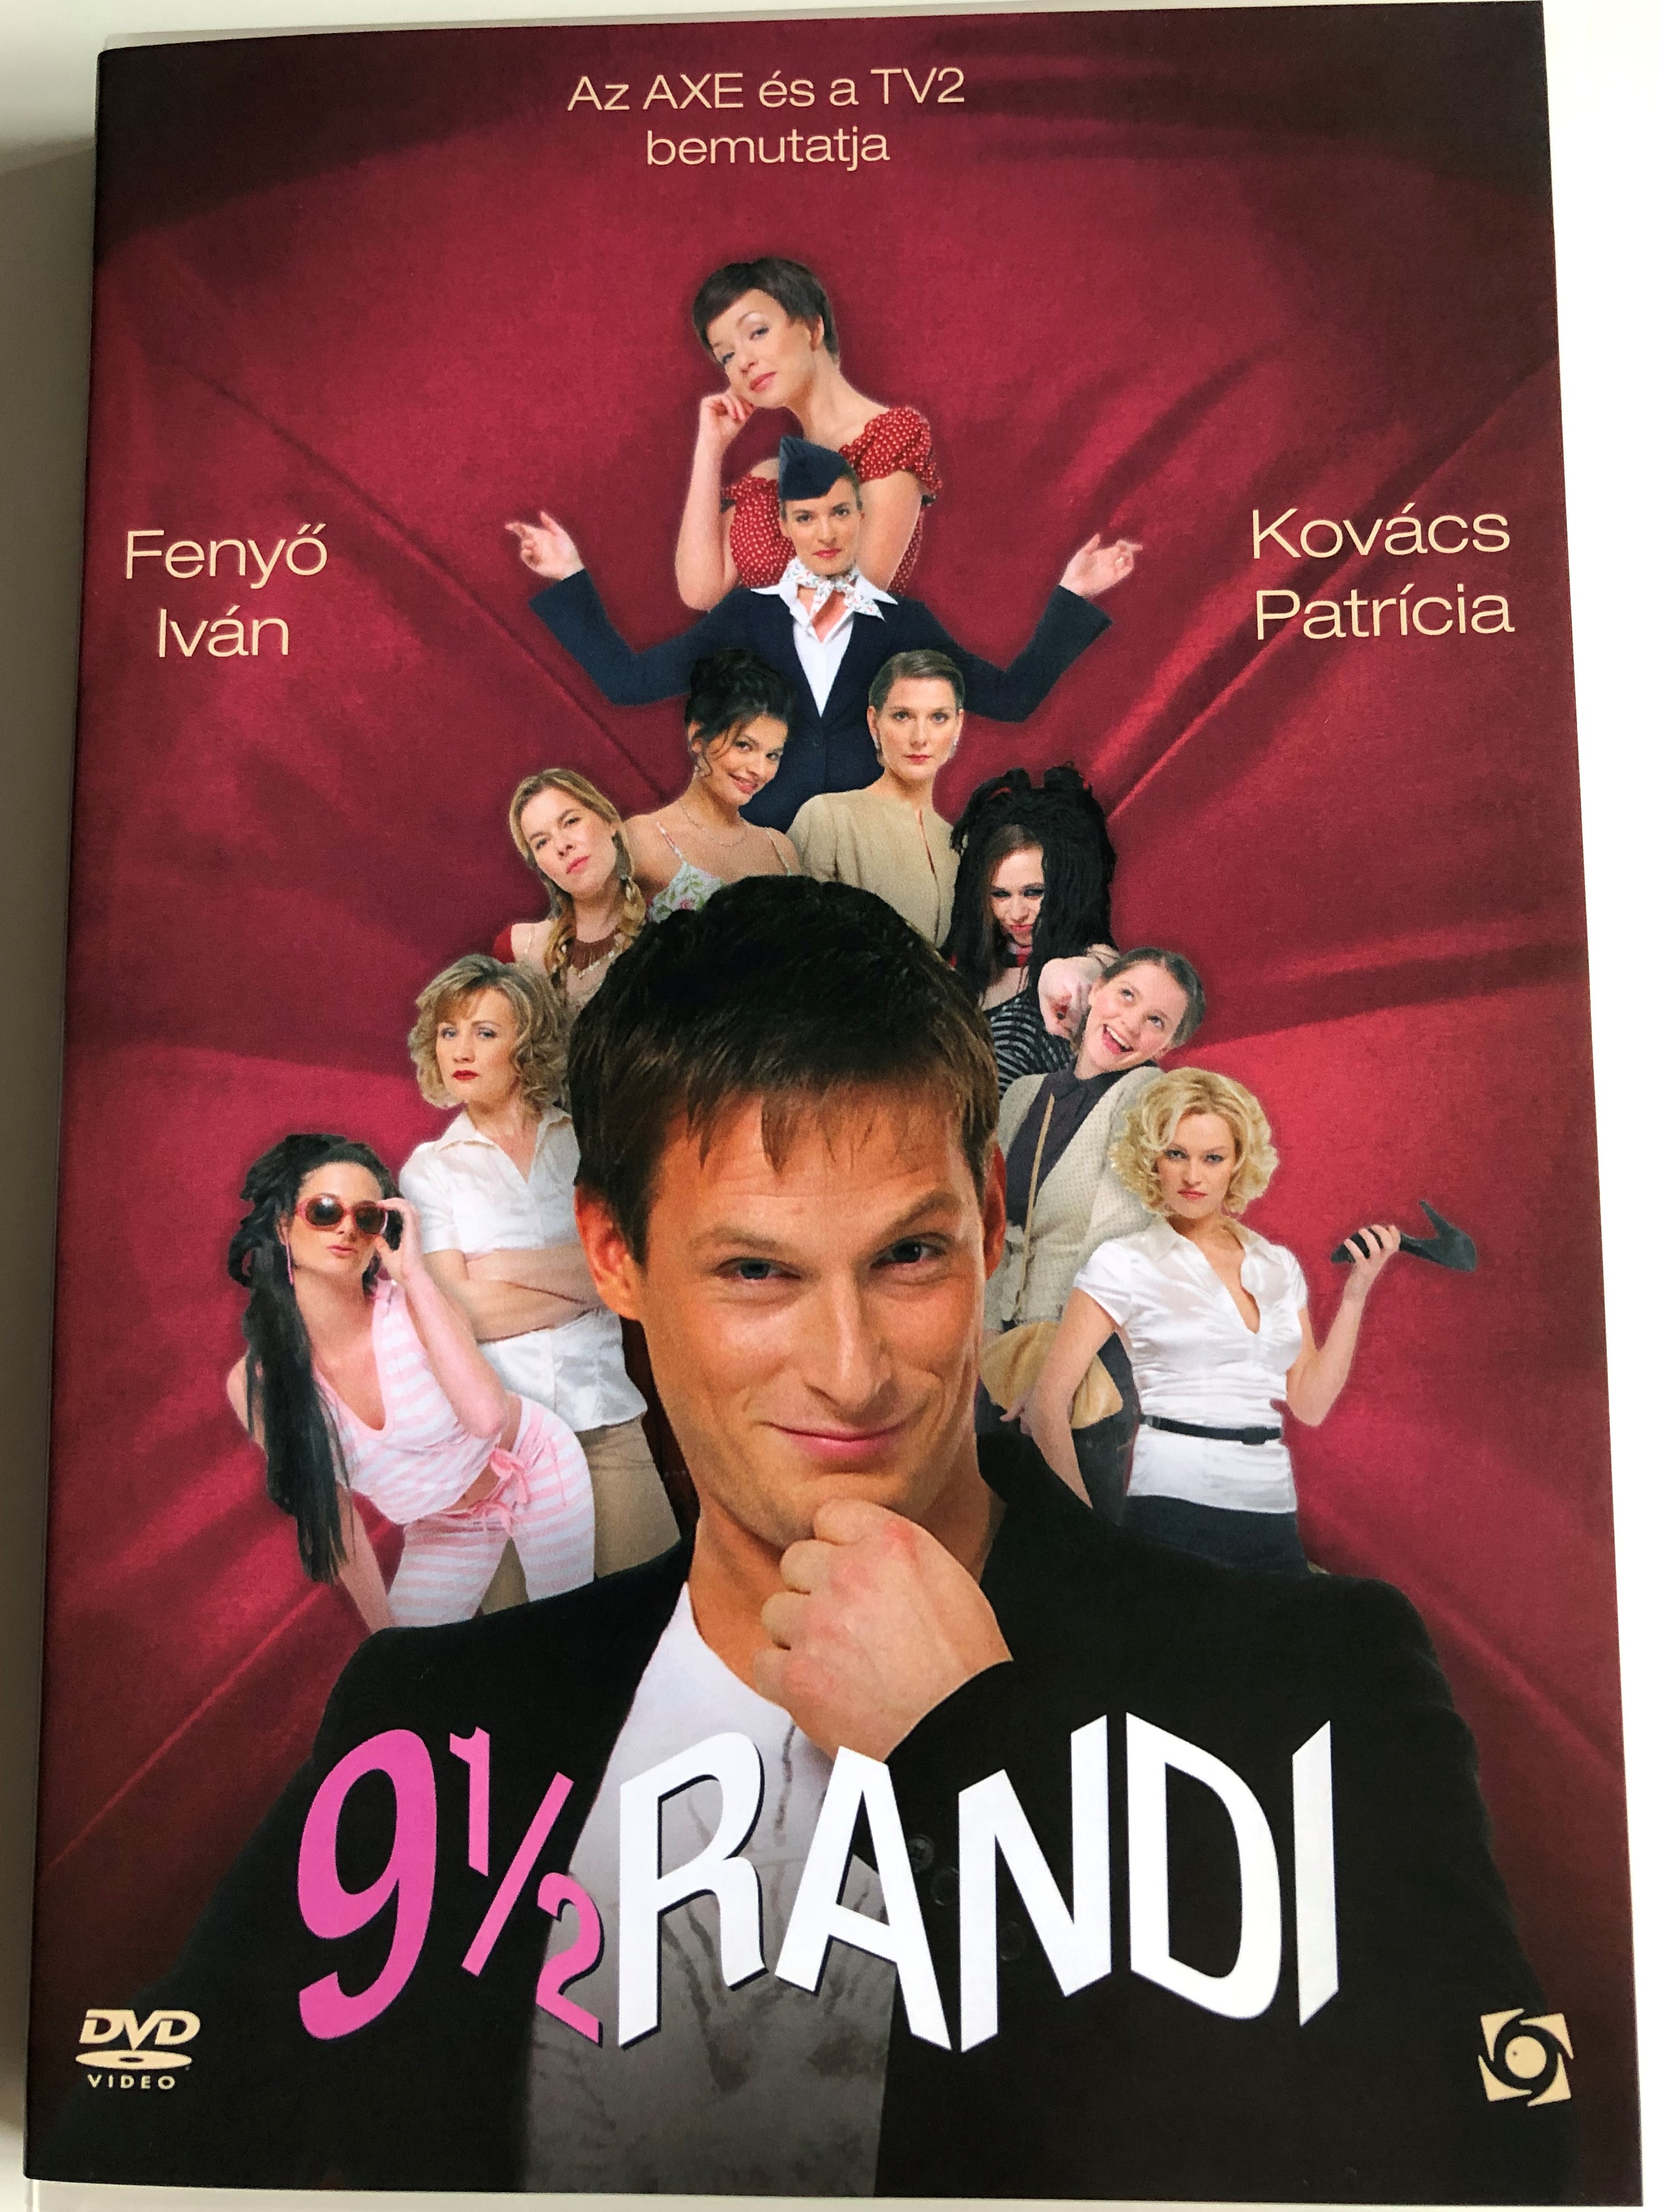 9 ½ Randi DVD 2008 9 ½ Dates 1.JPG